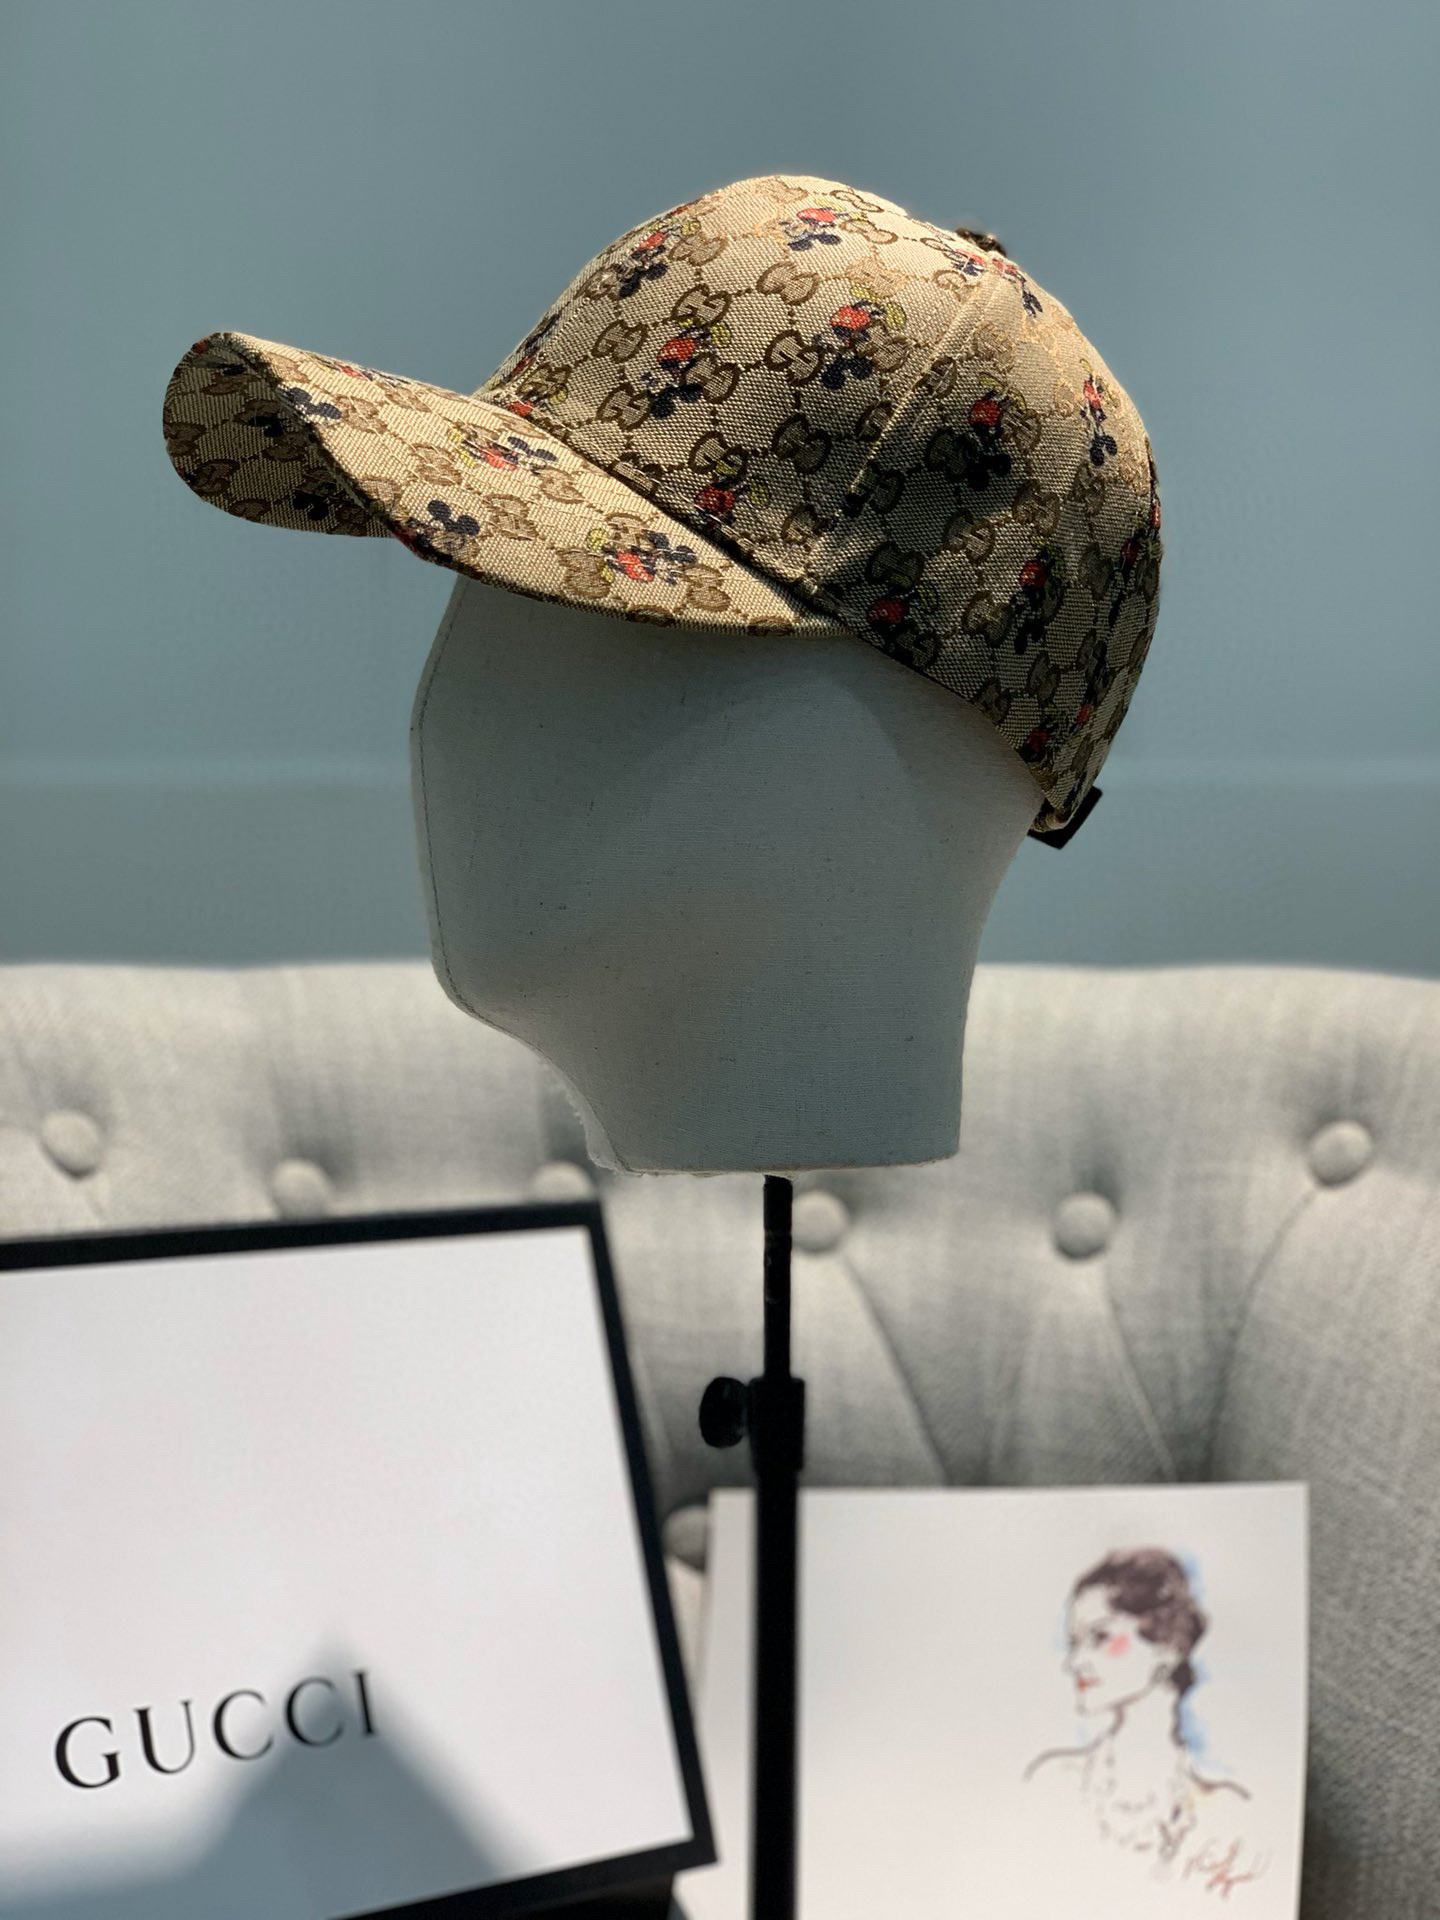 帽子 古驰 gucci 2020新款米奇米老鼠棒球帽 品牌: guccihats / 古驰